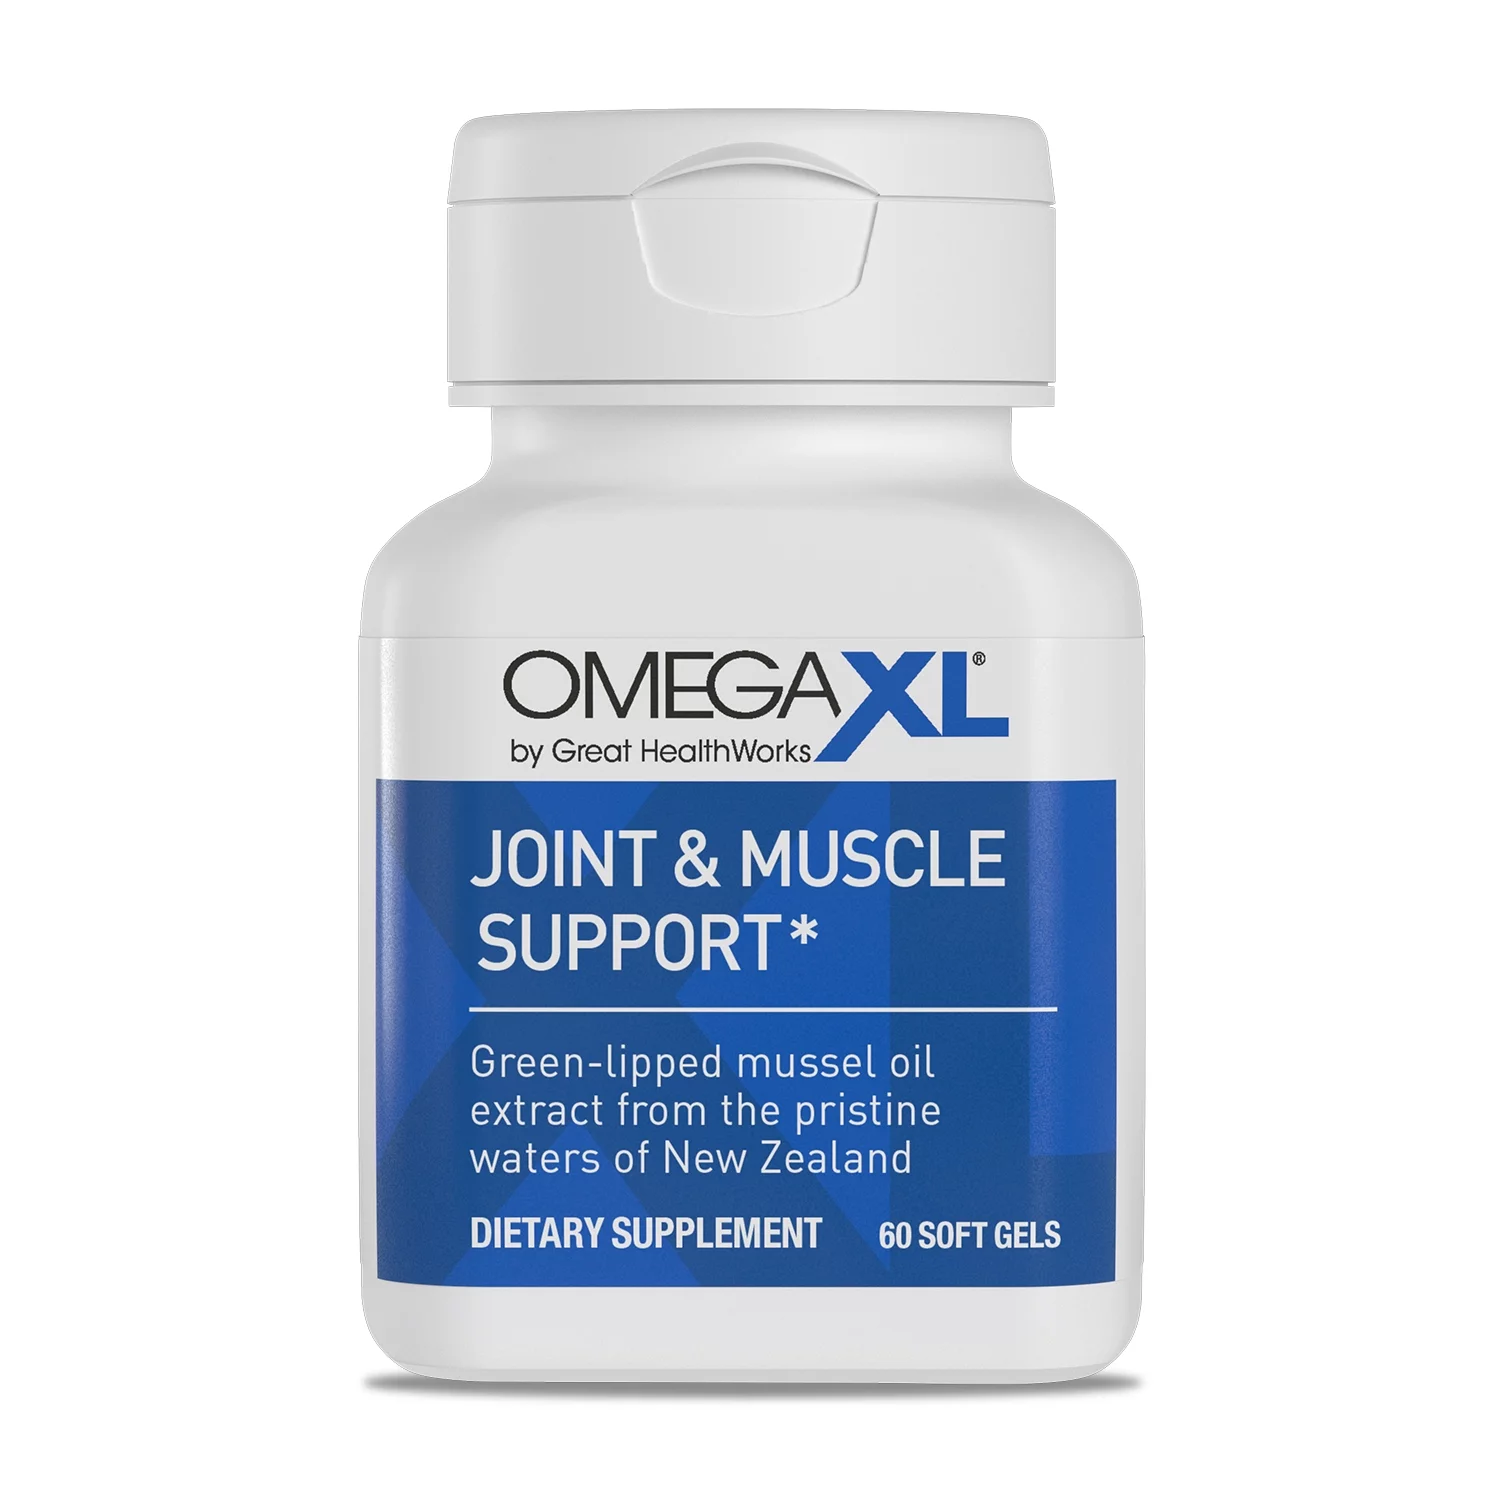 Omega Xl - bewertungen - inhaltsstoffe - anwendung - erfahrungsberichte